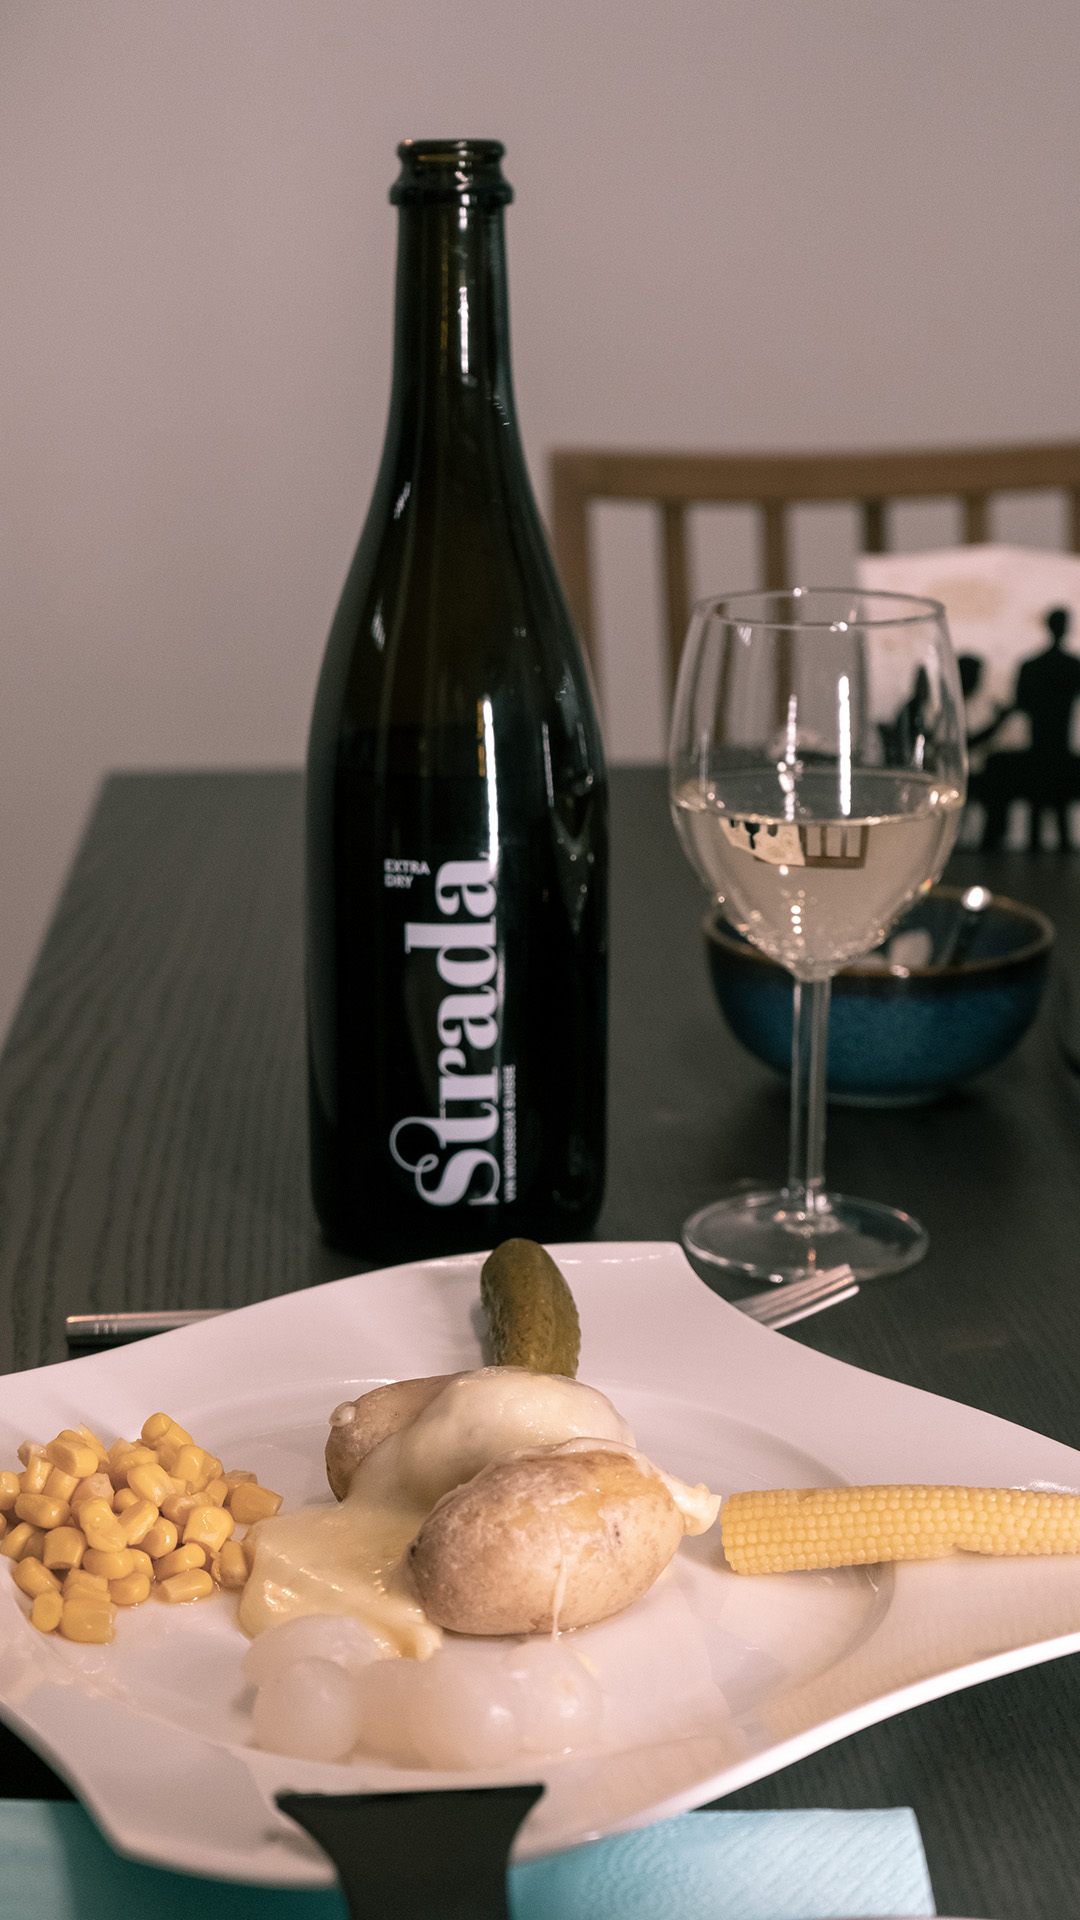 Der preisgekrönte, prickelnde schweizer Schaumwein aus Hallau der Rimuss & Strada Wein AG ist der Strada Extra Dry, welcher hervorragend zu einem Raclette passt